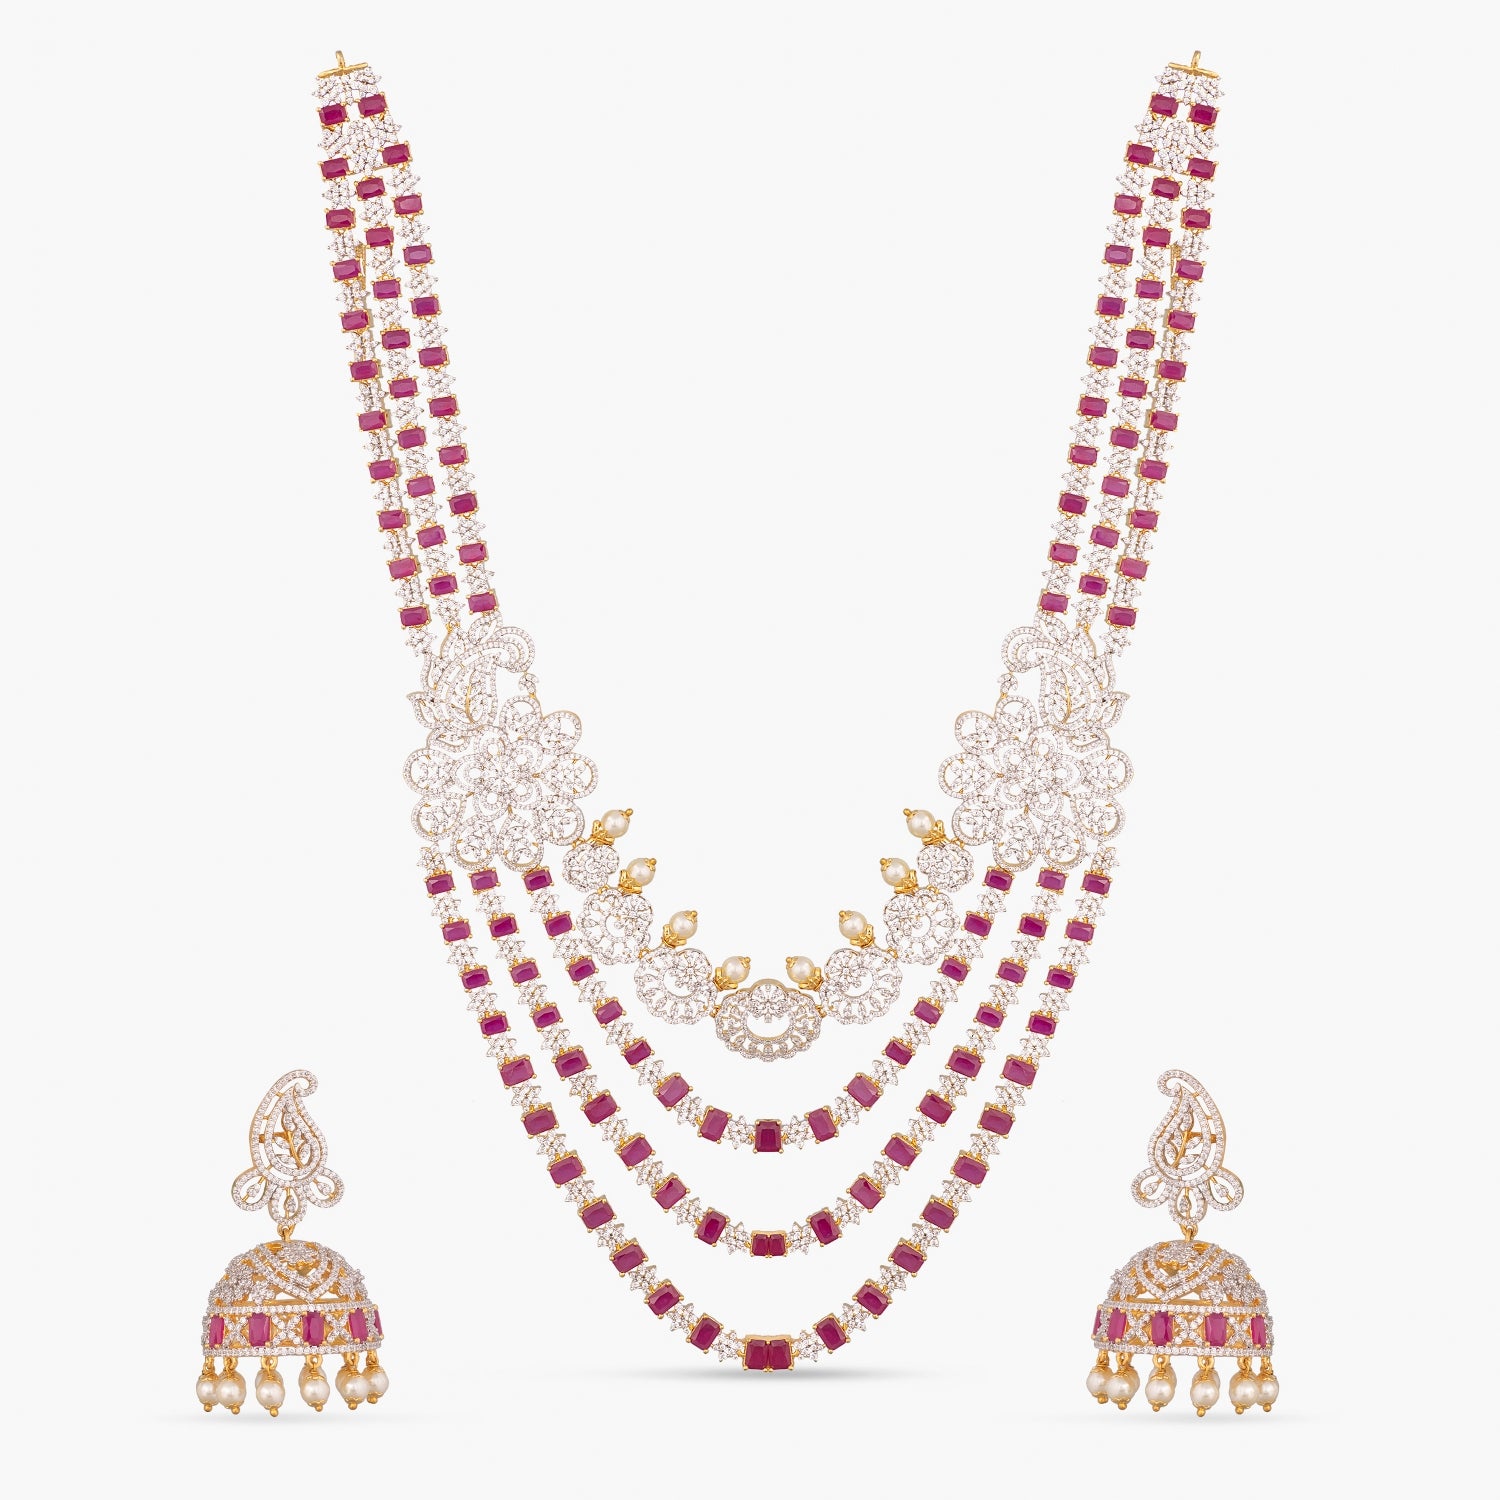 Shop Stylish & Premium Long Necklace Sets